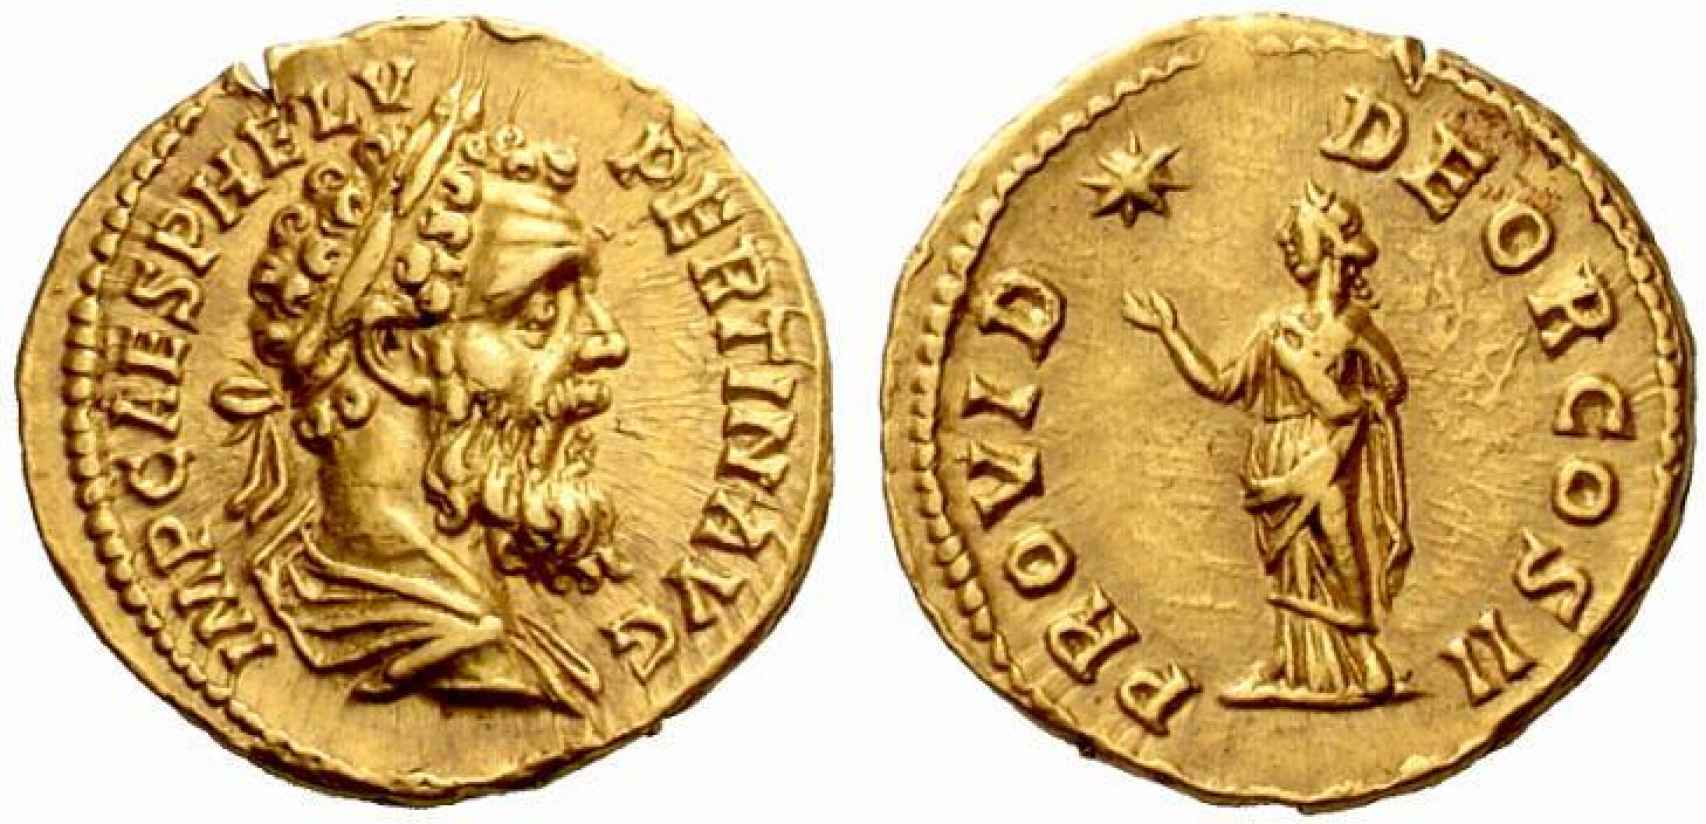 Monedas romanas emitidas durante el reinado de Pertinax.